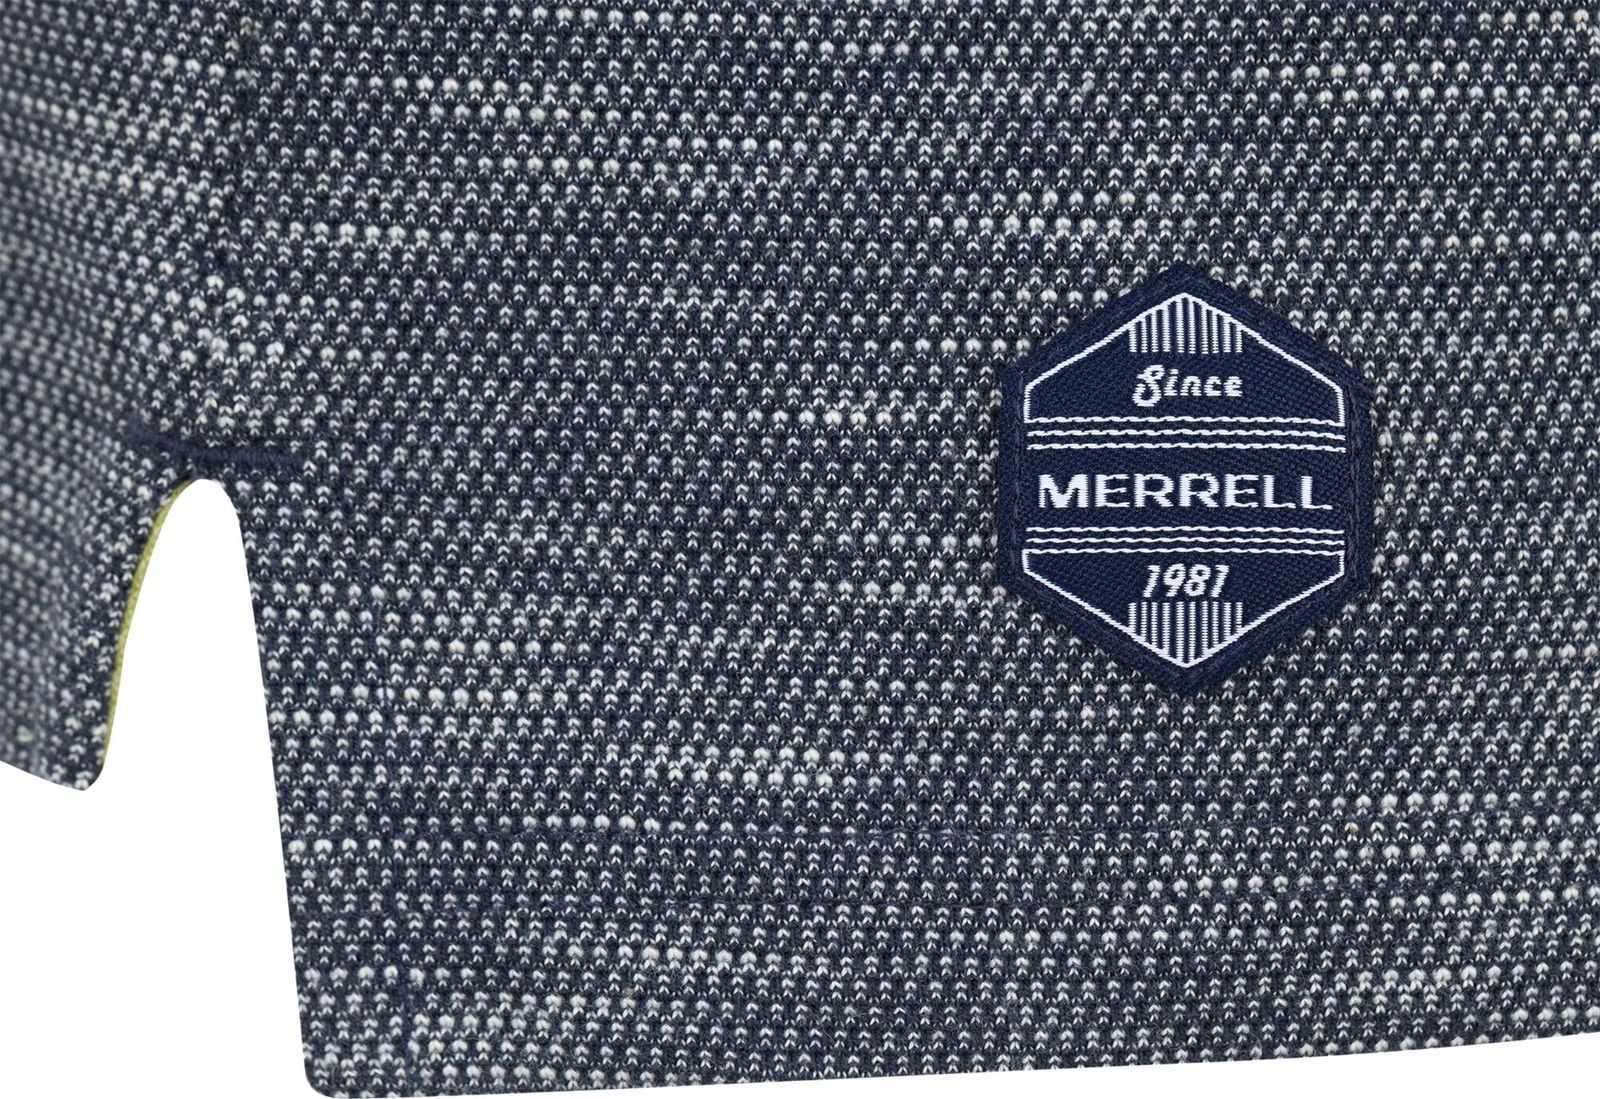   Merrell Men's Polo, : -. S17AMRPOM01-5M.  50